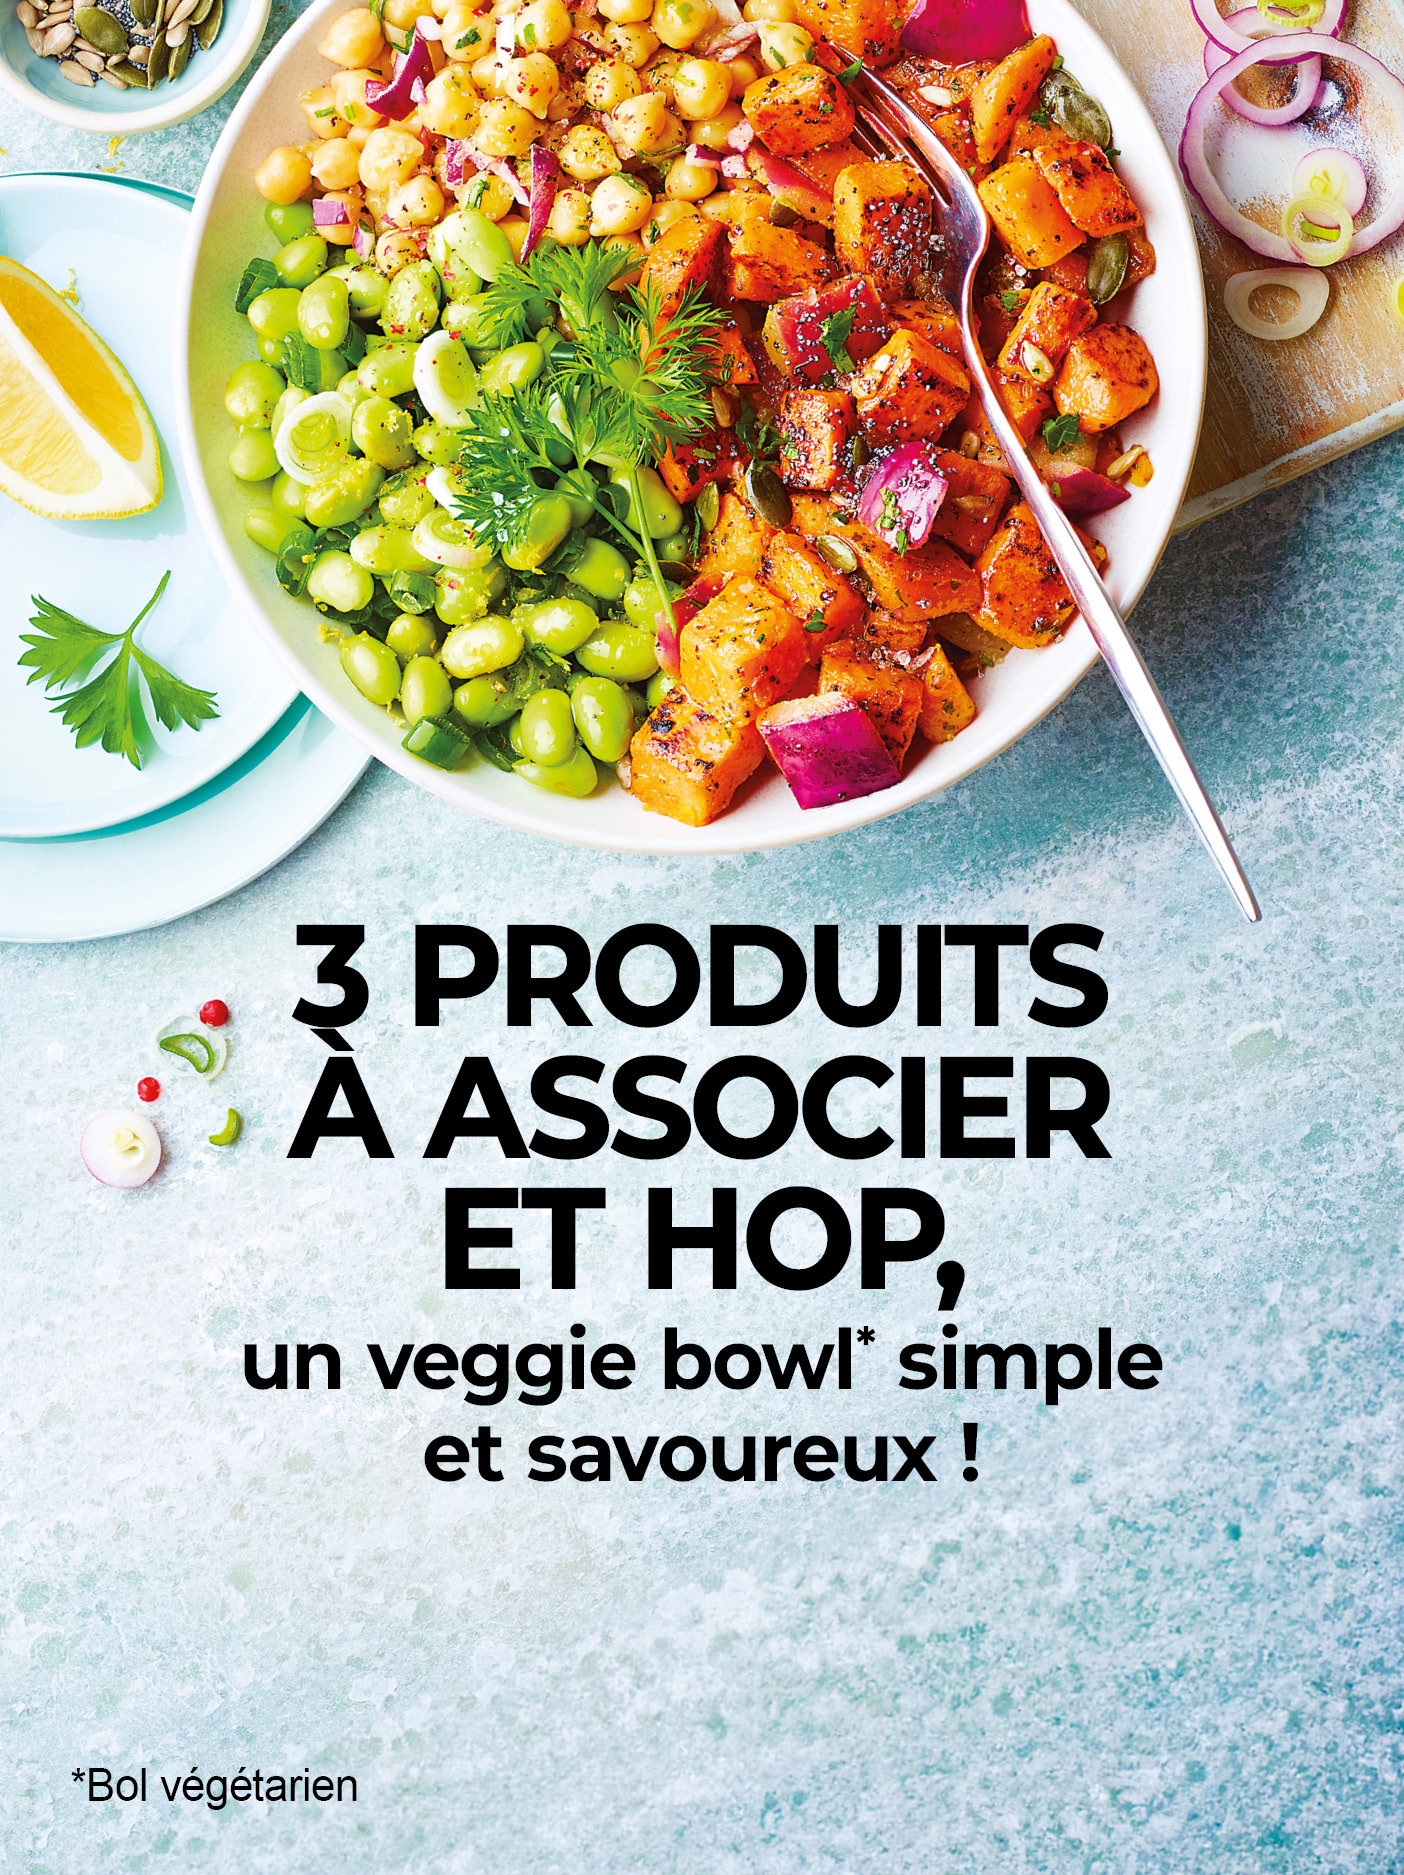 Composez votre salade bowl grâce à l'association de trois produits : fèves de soja, pois chiches et poêlée de patates douces